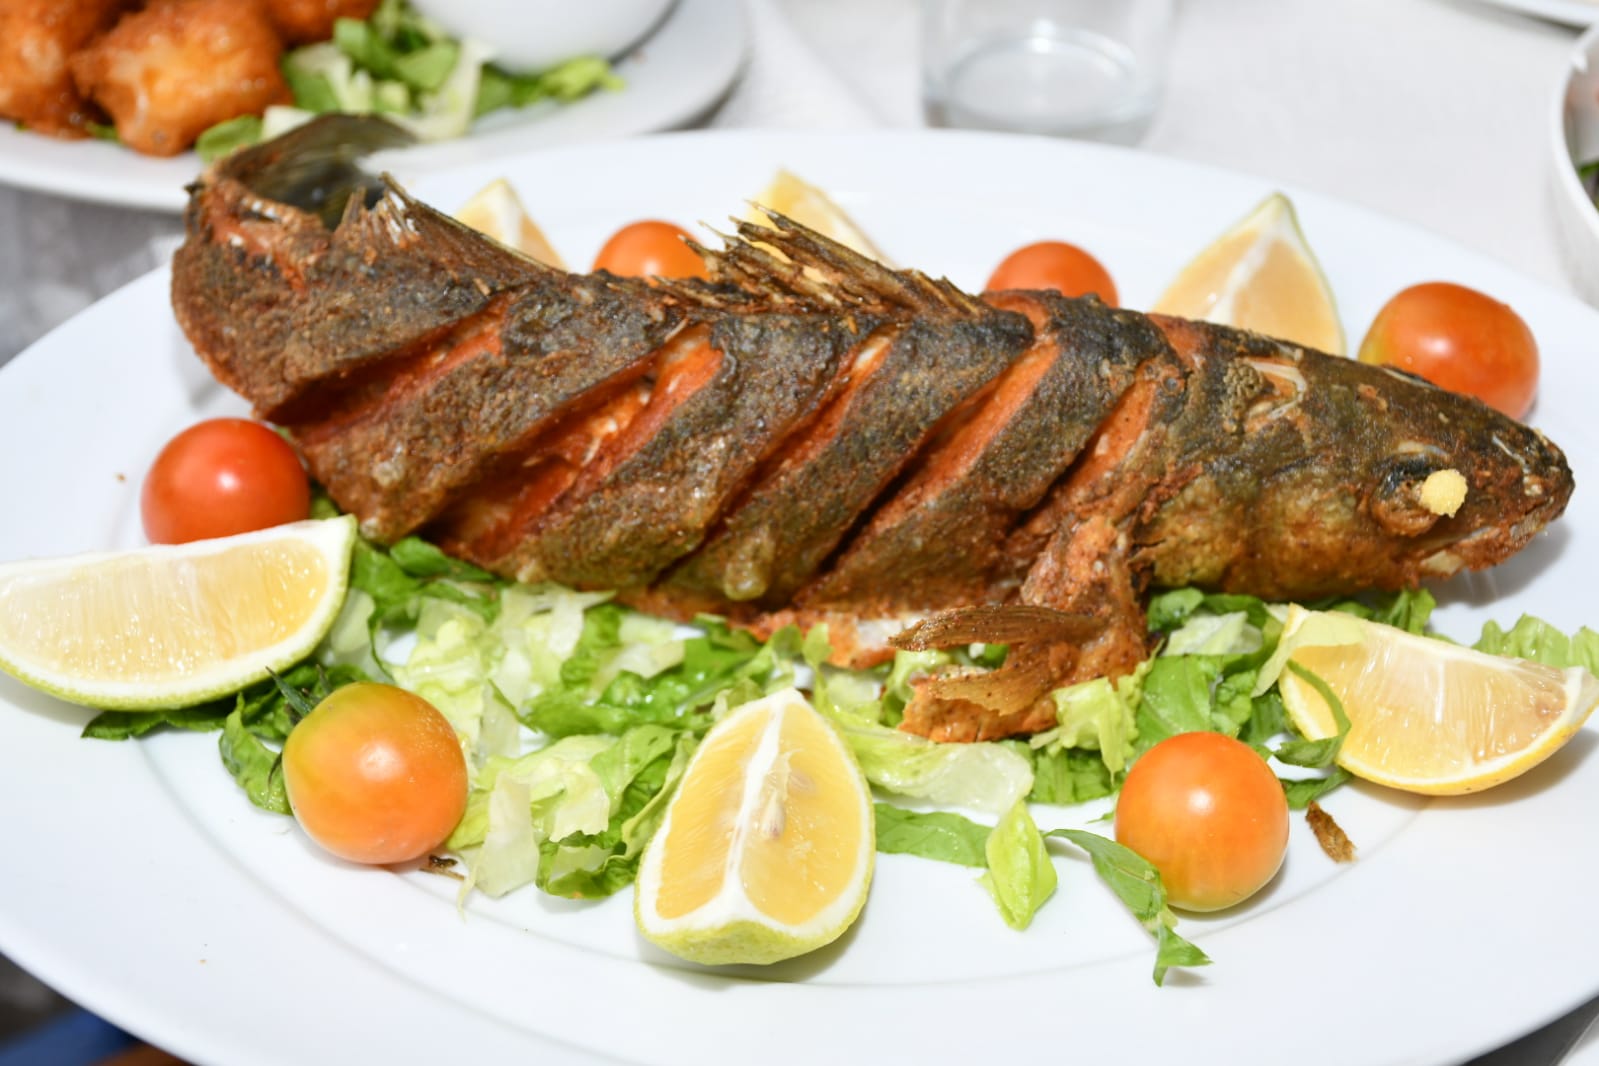 تناولوا وجبة بحرية مميزة في مطعم أبراج فقط بـ 250 شيكل للزوج 